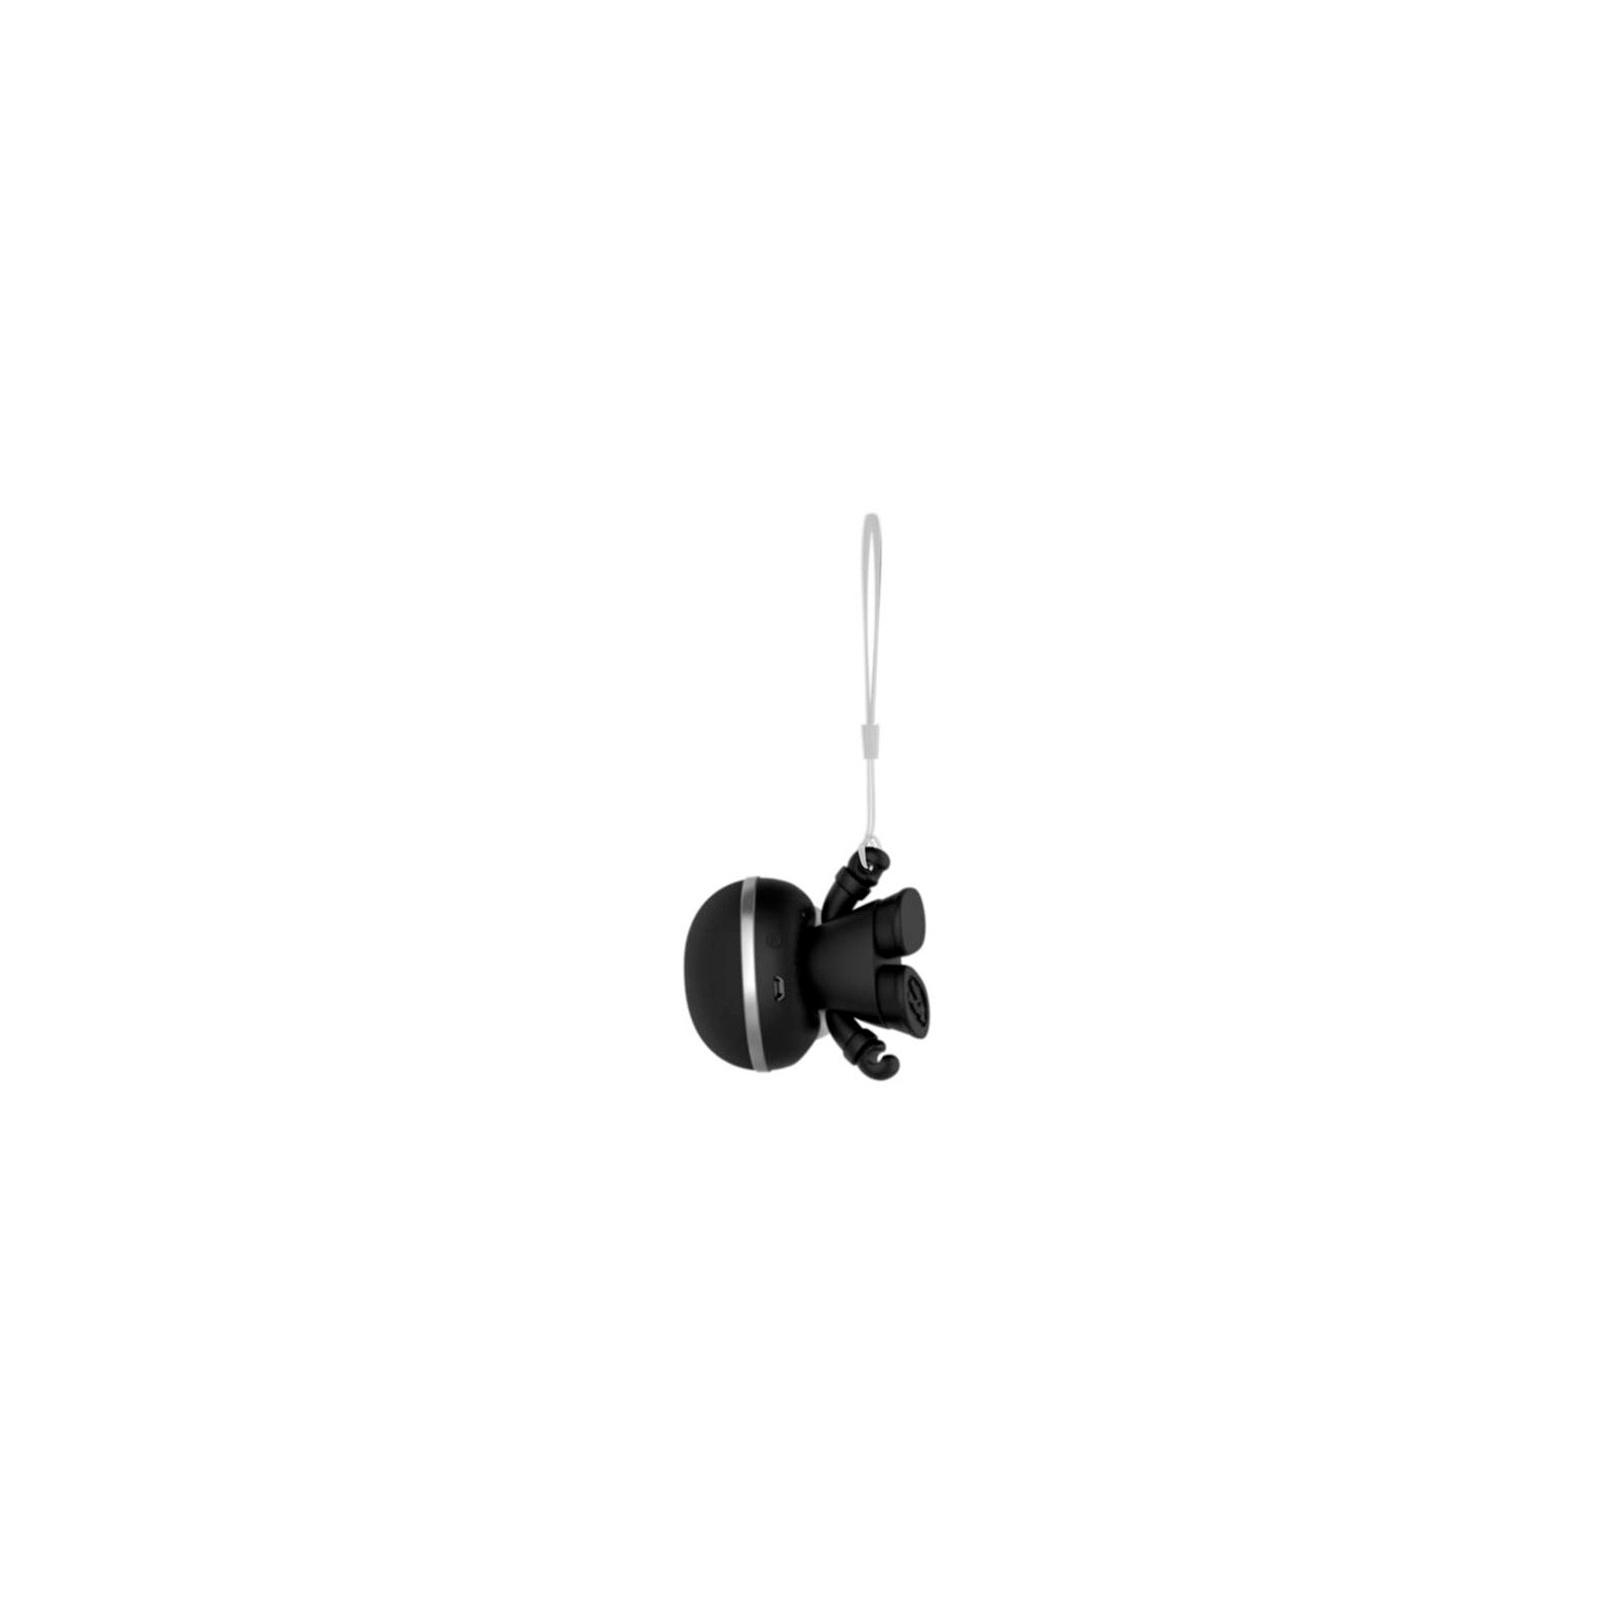 Интерактивная игрушка Xoopar Акустическая система Mini Xboy Металлик Black (XBOY81001.21М) изображение 4